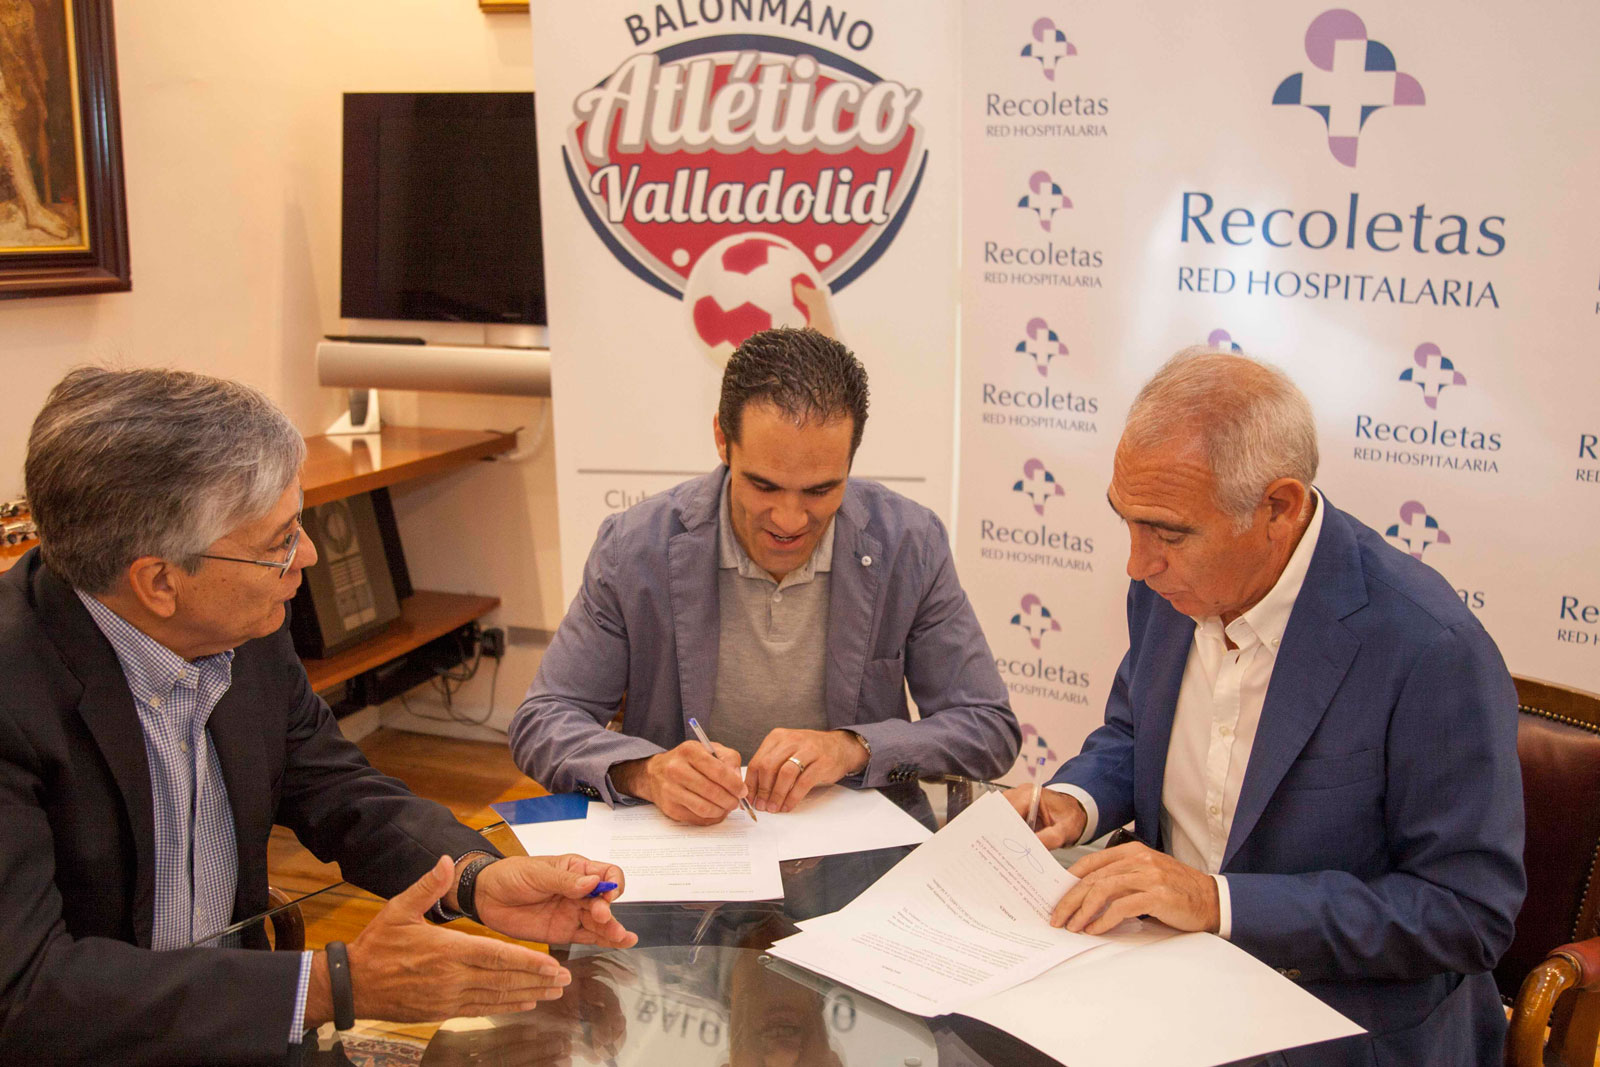 Recoletas Red Hospitalaria continuará apoyando al Atlético Valladolid dos temporadas más | Galería 1 / 1